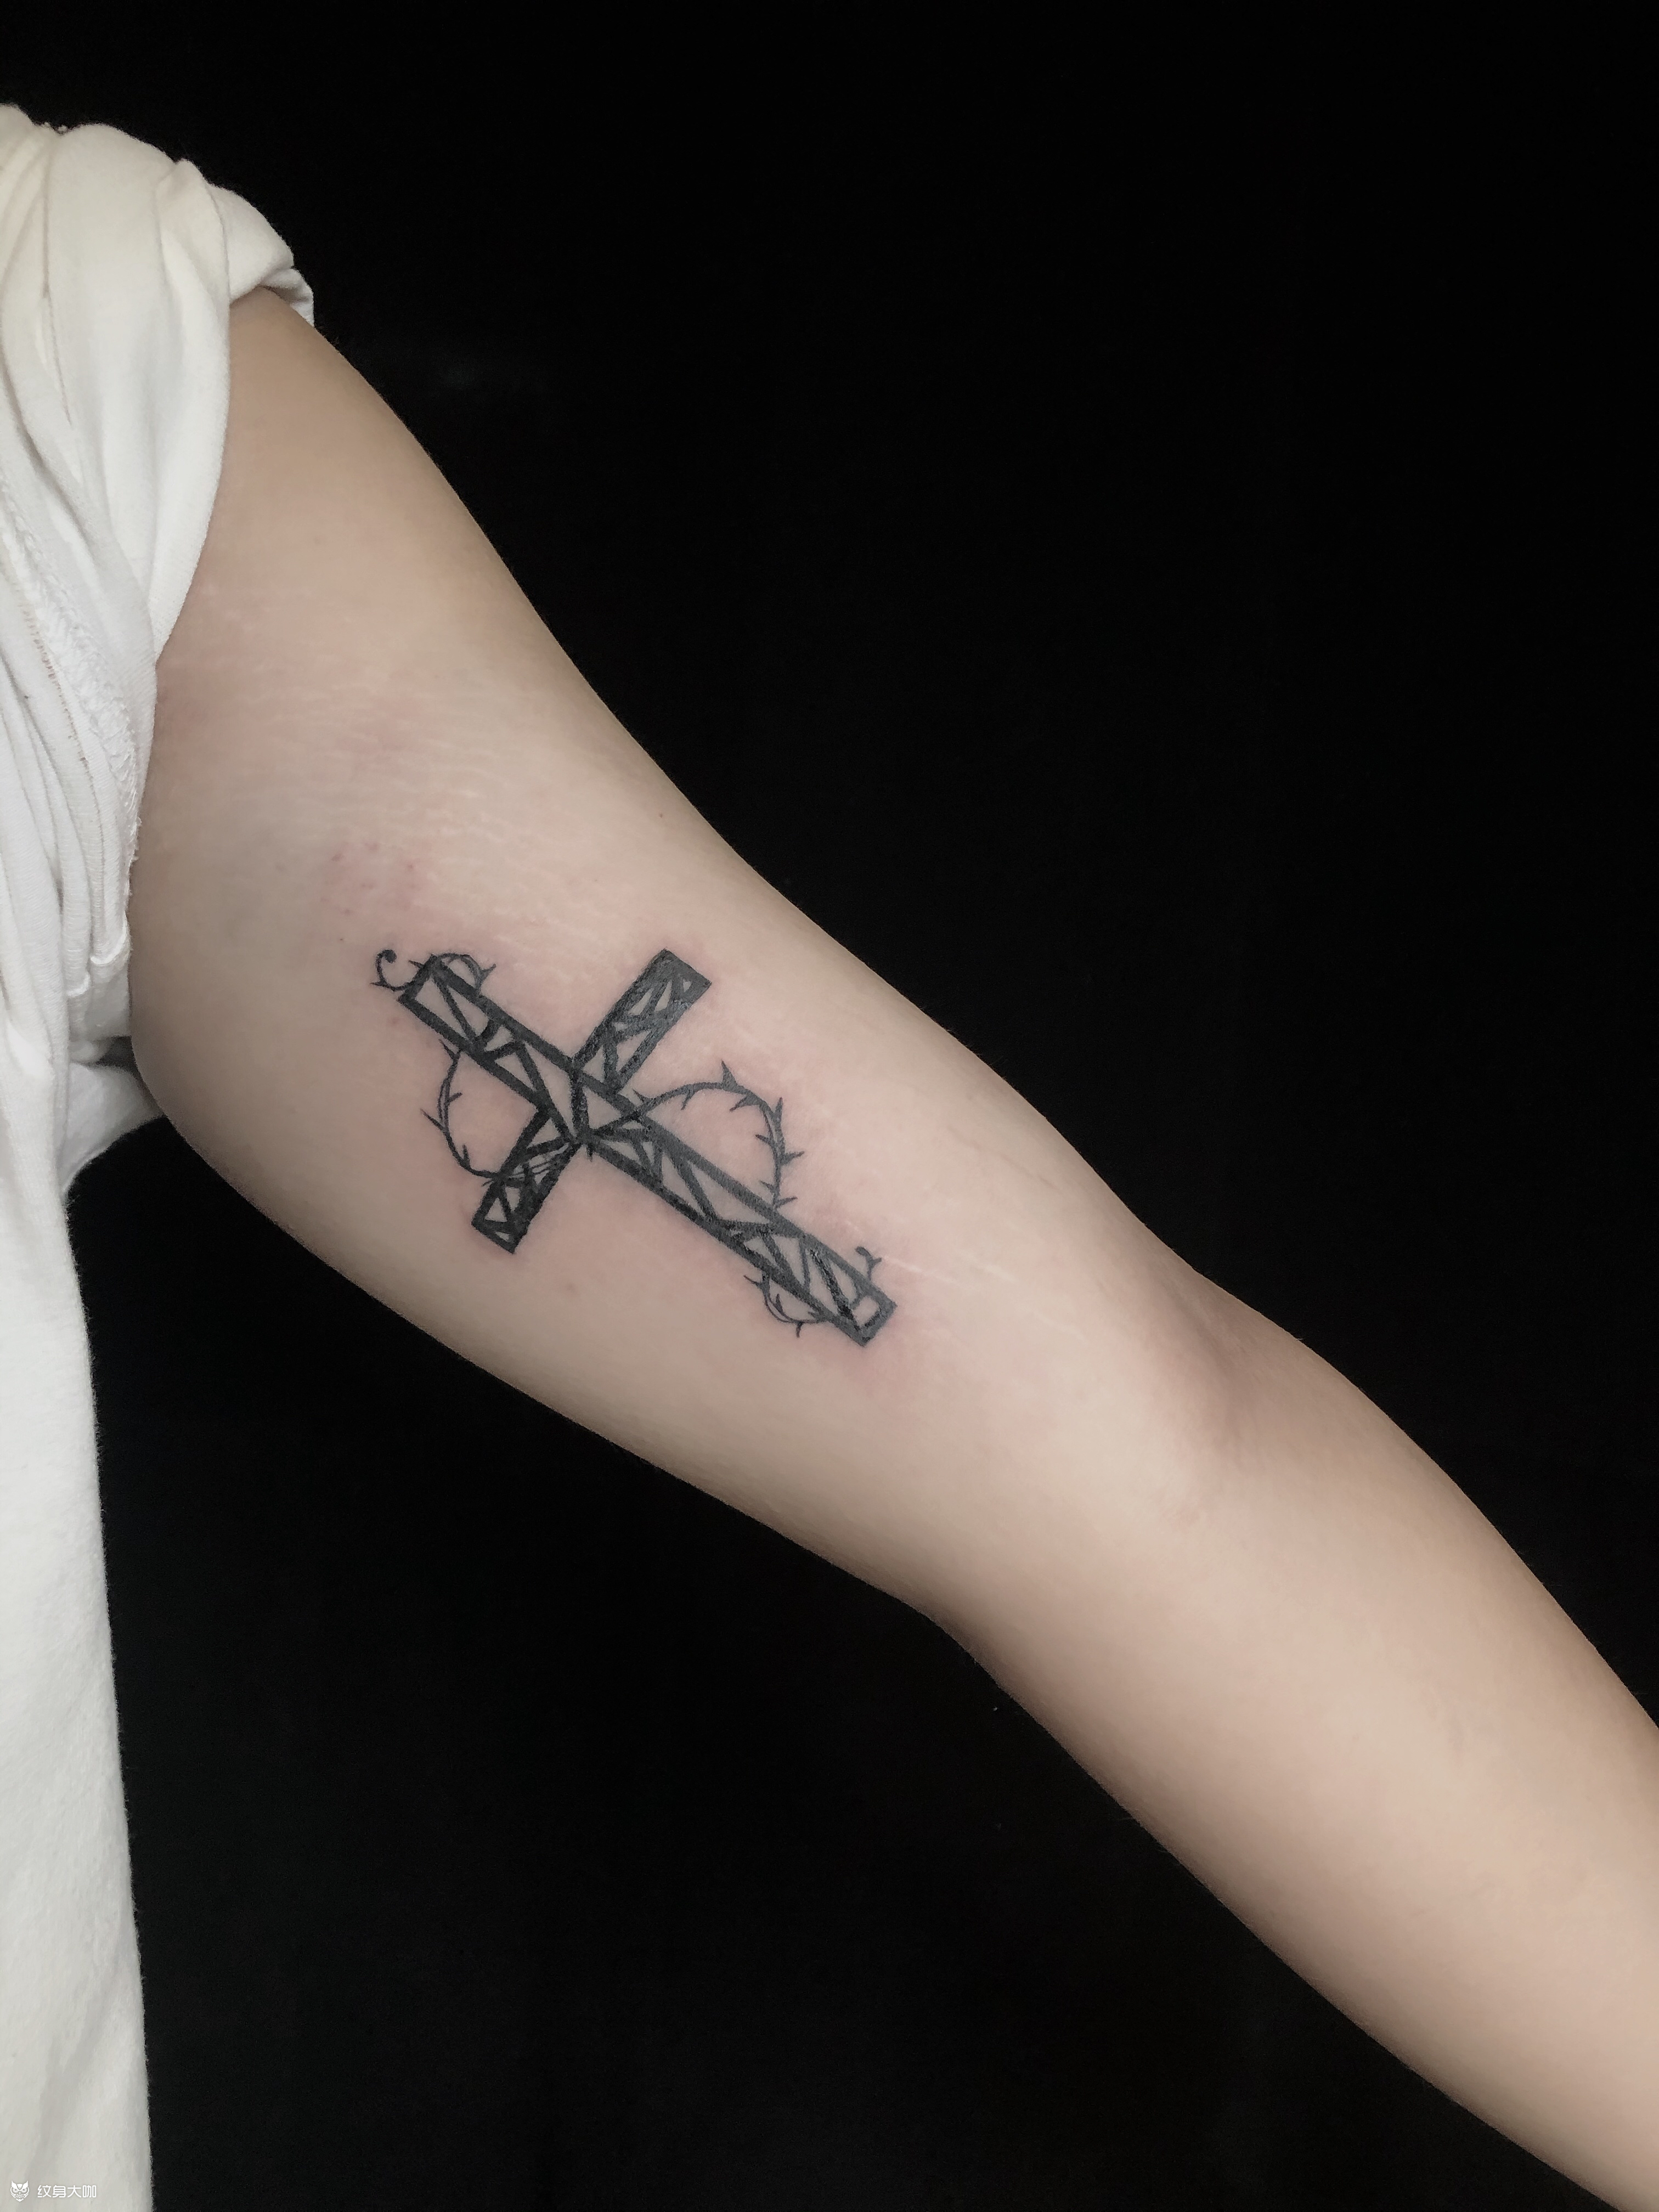 七宗罪十字架纹身图片